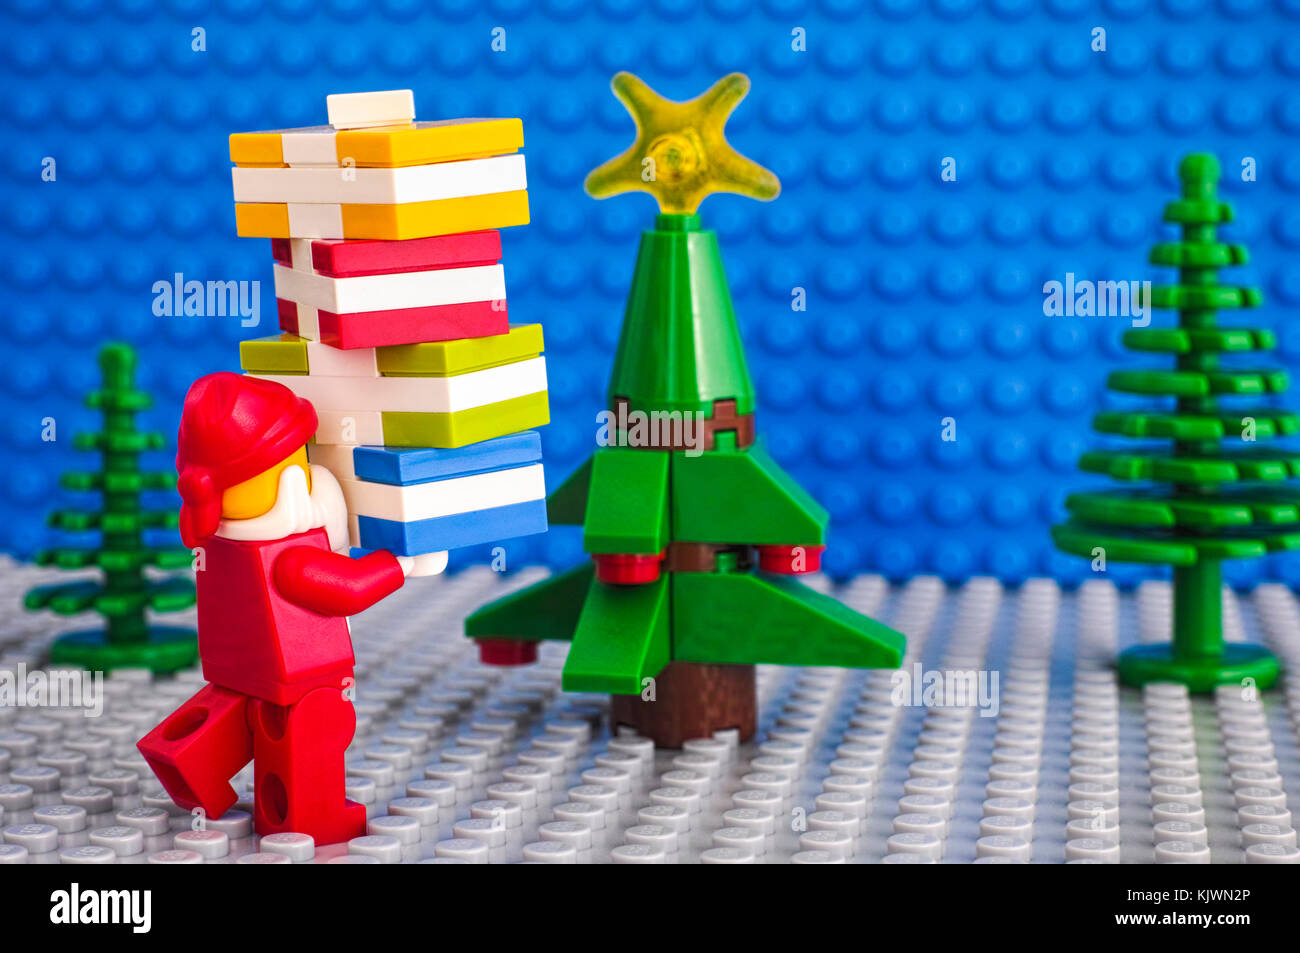 Tambow, Russische Föderation - November 06, 2017 lego Santa Claus mit Stapel von präsentiert in der Nähe von Weihnachten Baum. Lego beseplates Hintergrund. Studio gedreht. Stockfoto